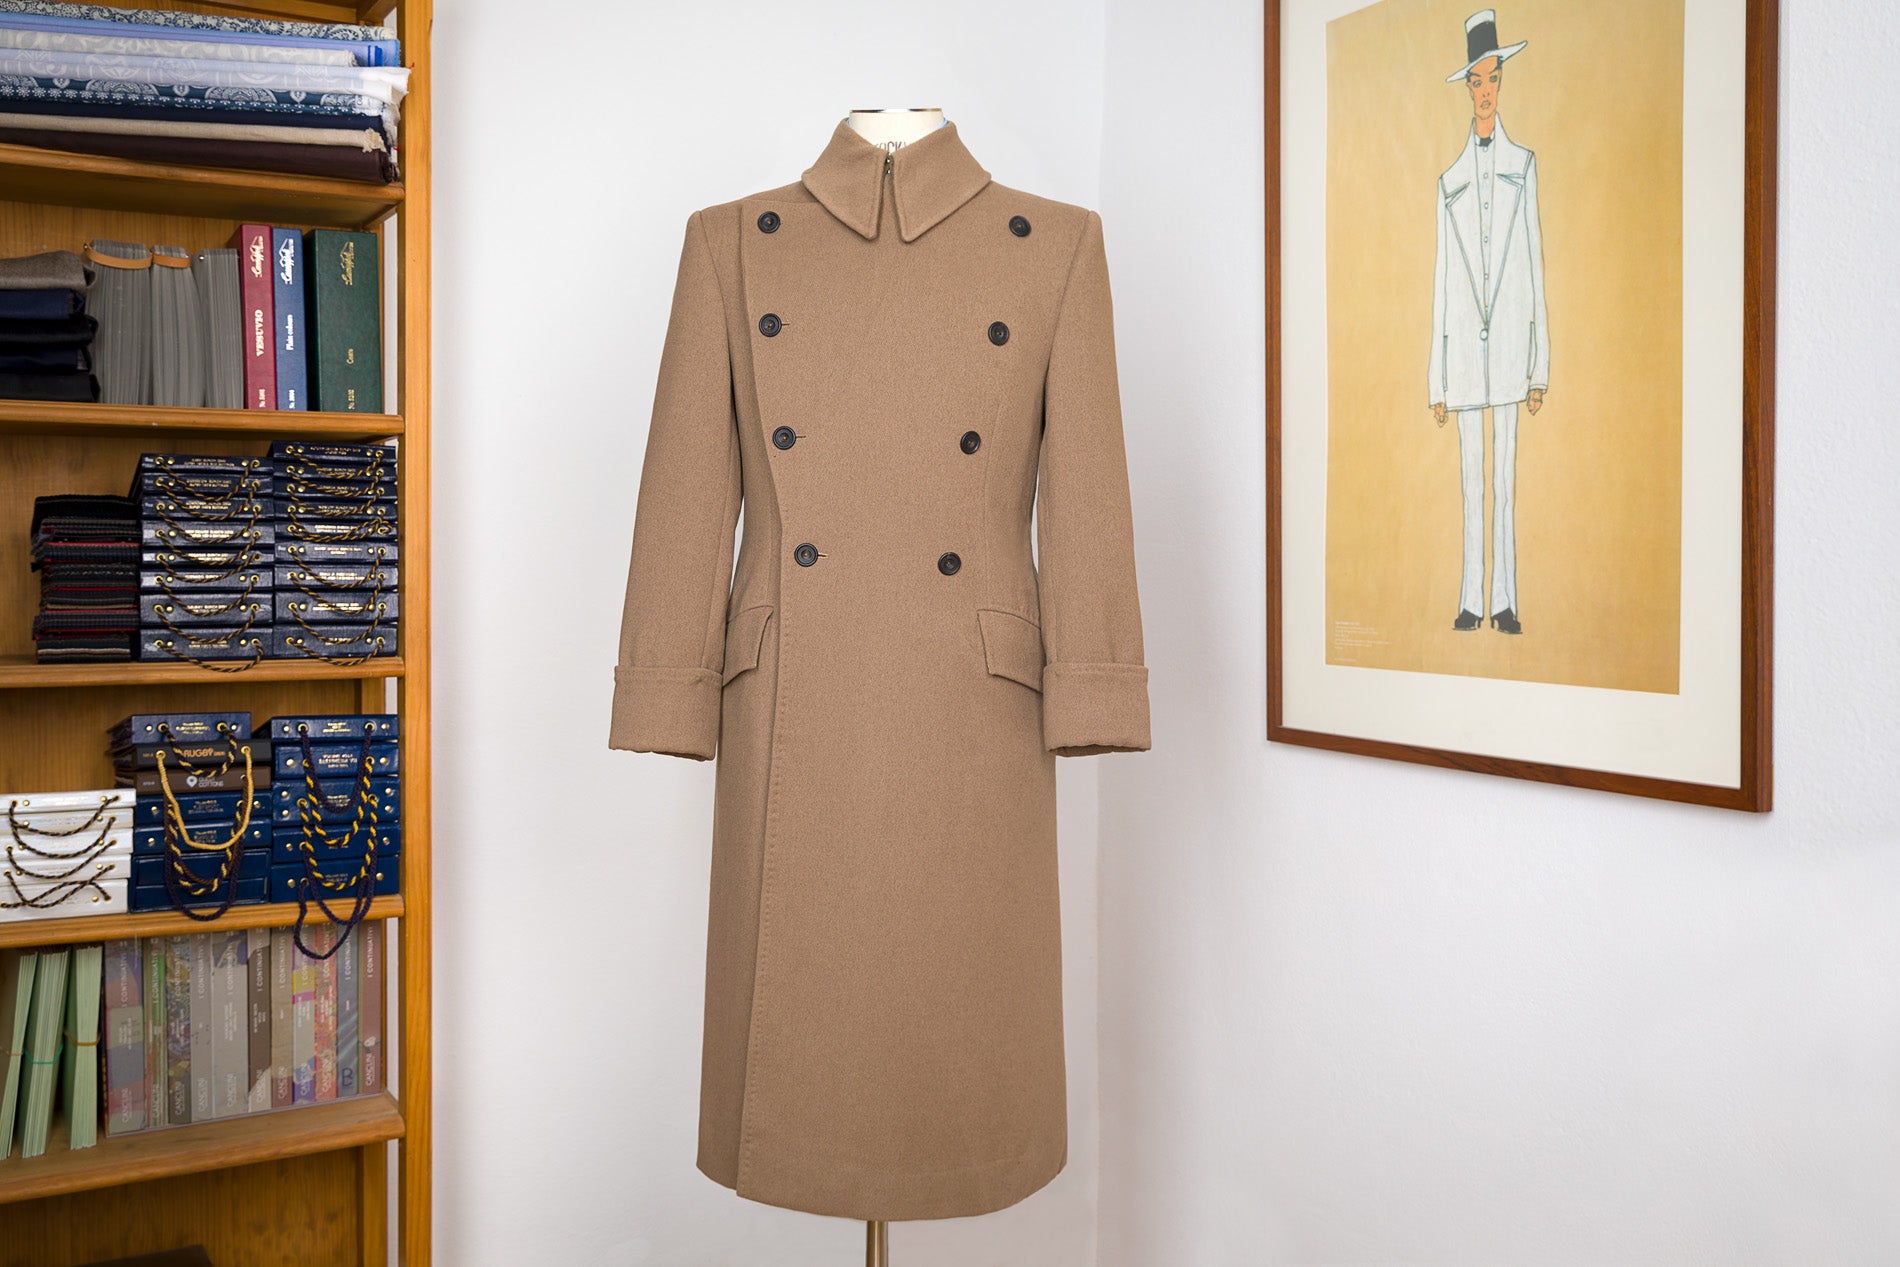 Great coat in udeshi atelier